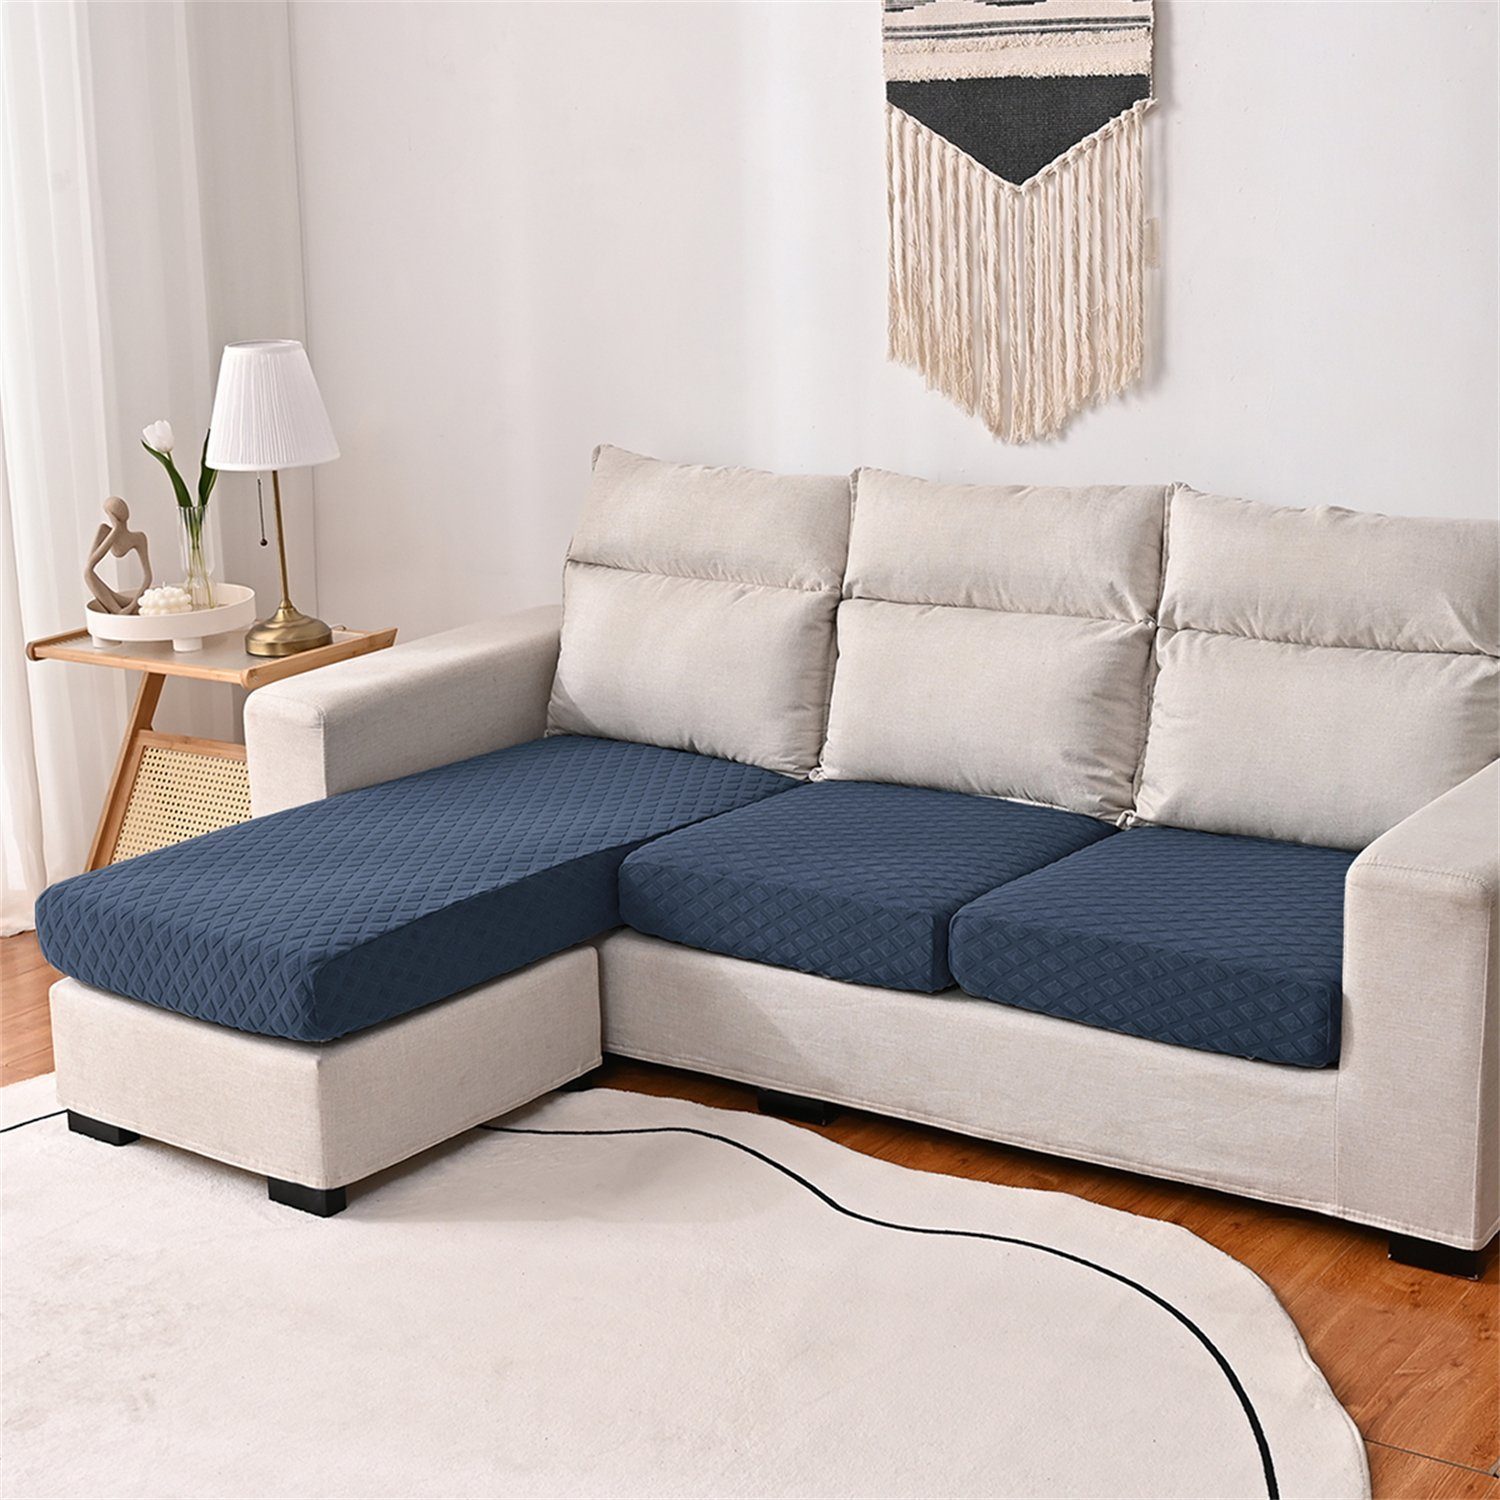 Sofahusse, HOMEIDEAS, wasserfest elastischer Sofa-Sitzbezug mit 3DMuster Navy Blau